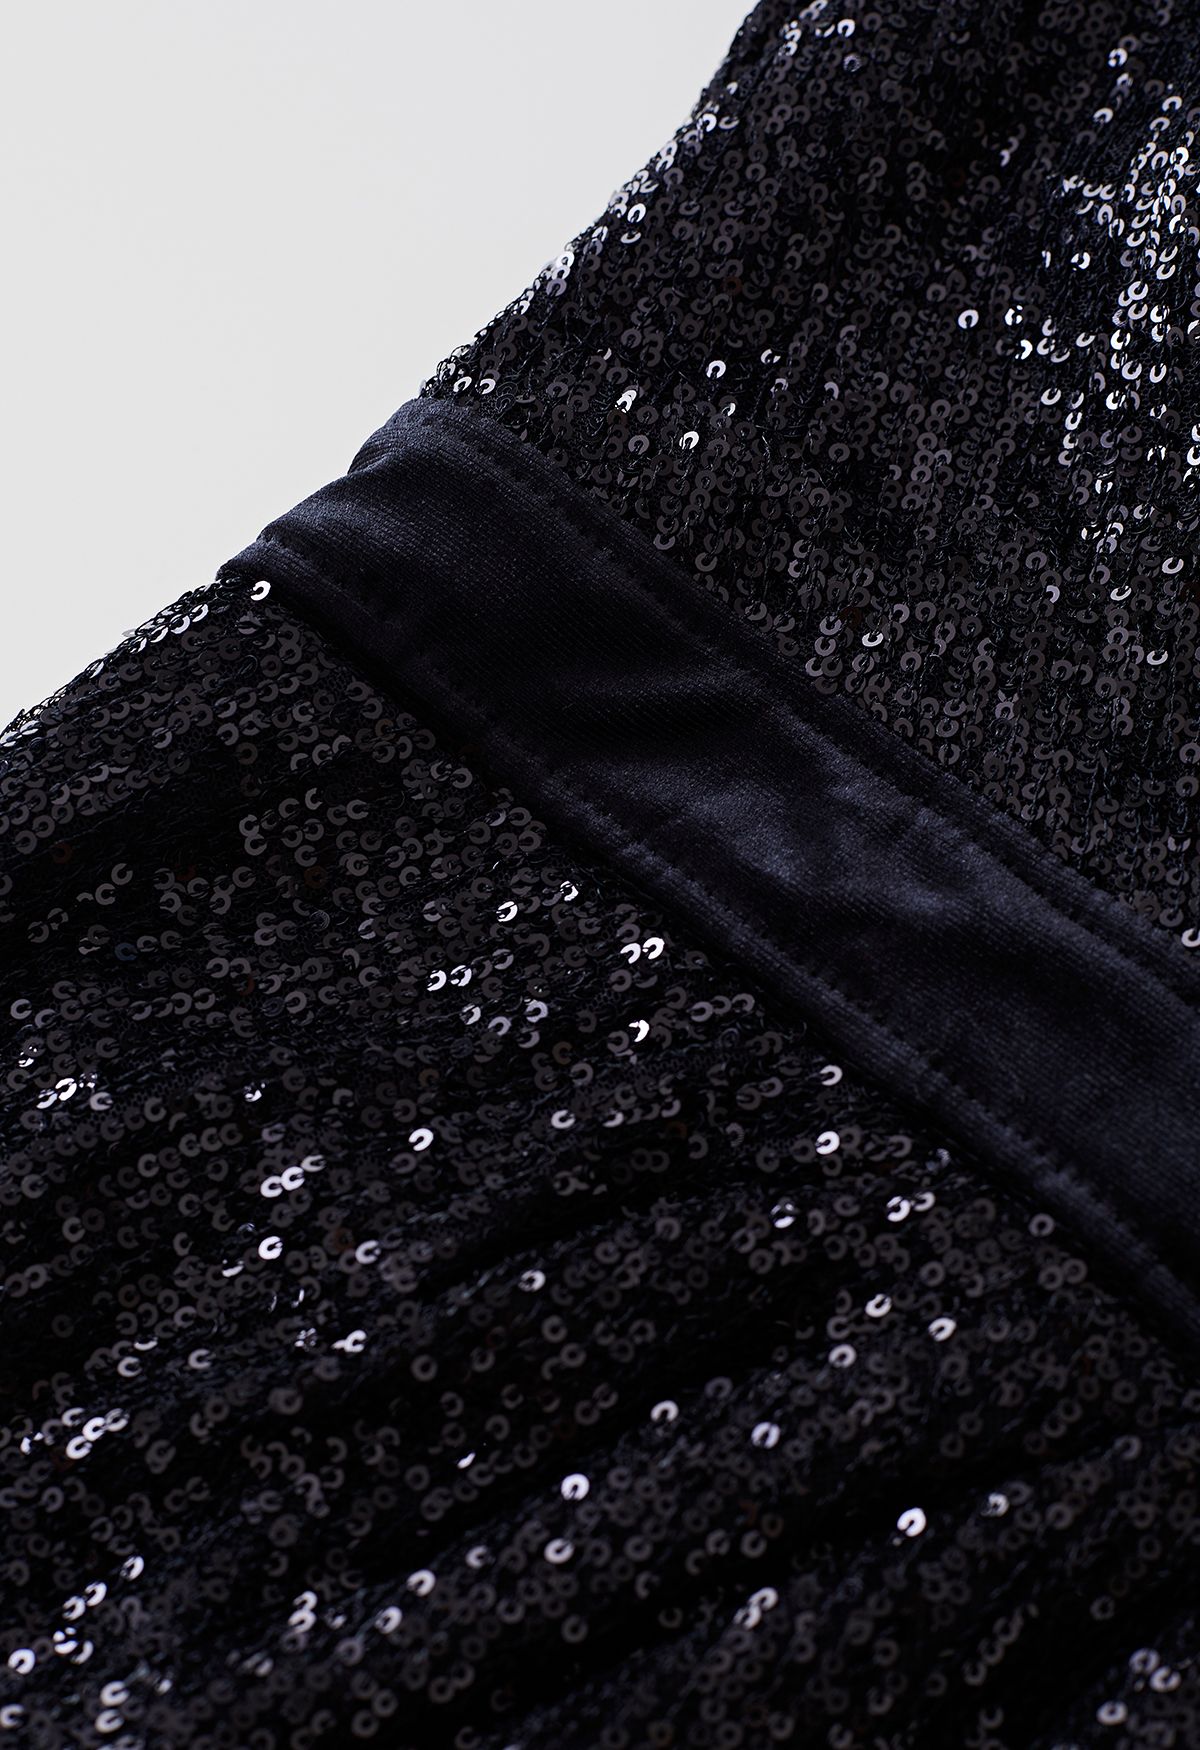 فستان كوكتيل من المخمل بالترتر المبهر باللون الأسود